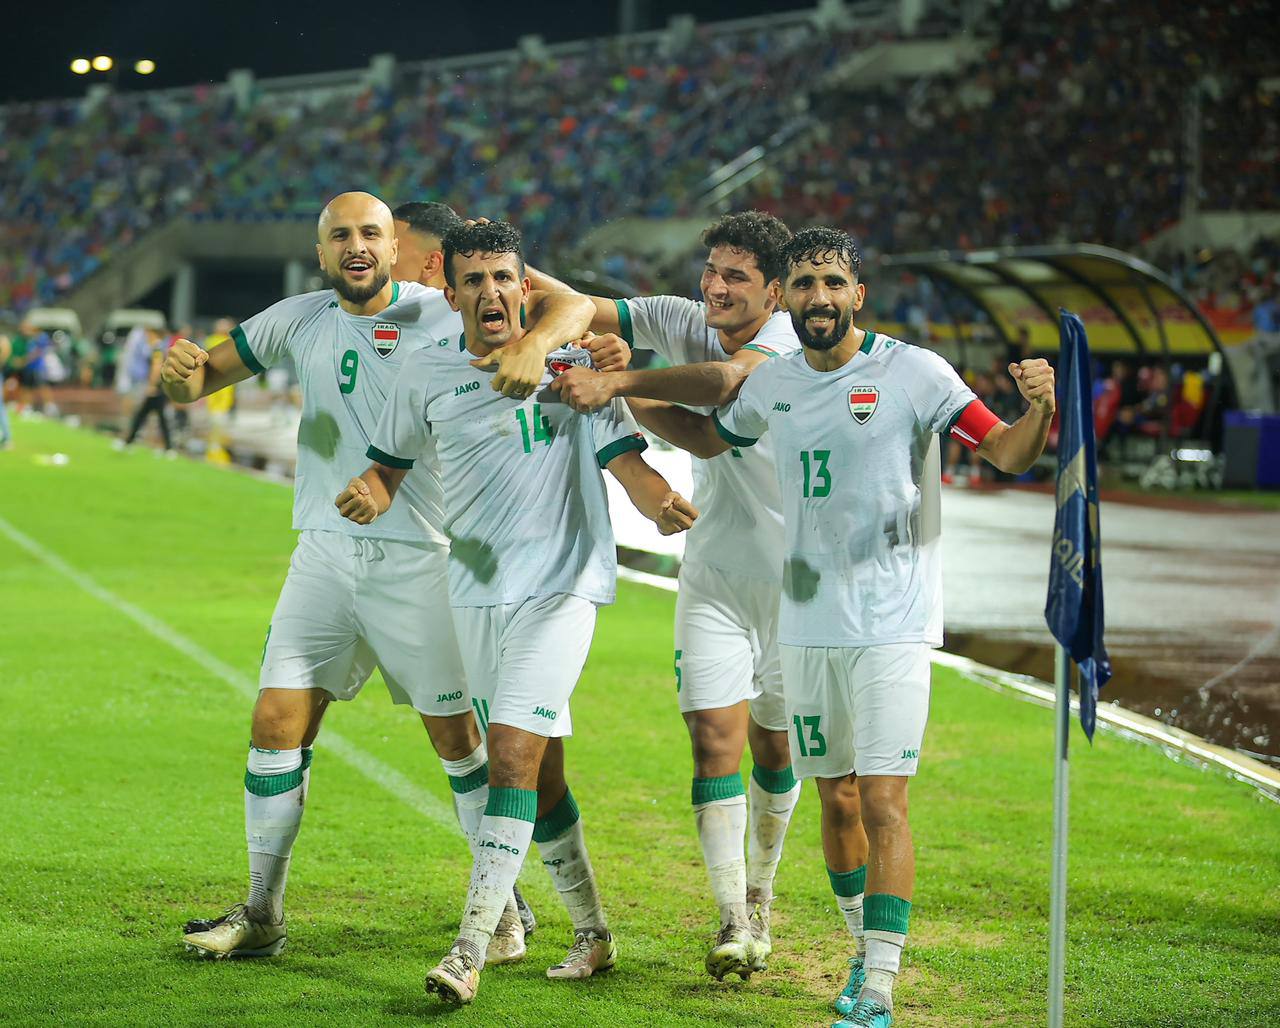 منتخب العراق يتوّج بكأس ملك تايلند بعد تغلبه على نظيره التايلندي بركلات الترجيح